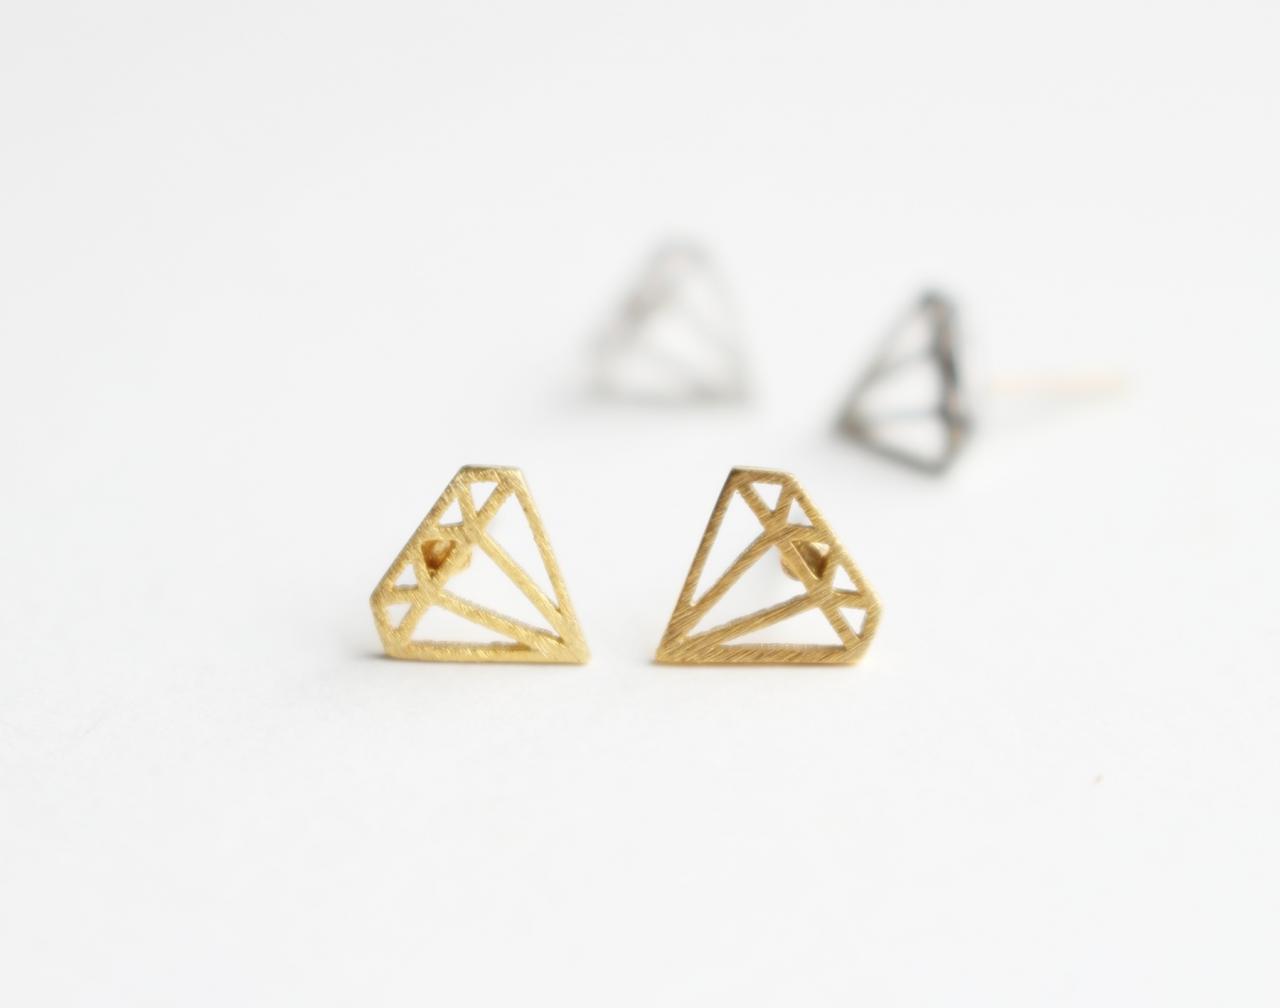 Diamond Shape Stud Earrings, Post Earrings, Sterling Silver Ear Post, Geometric